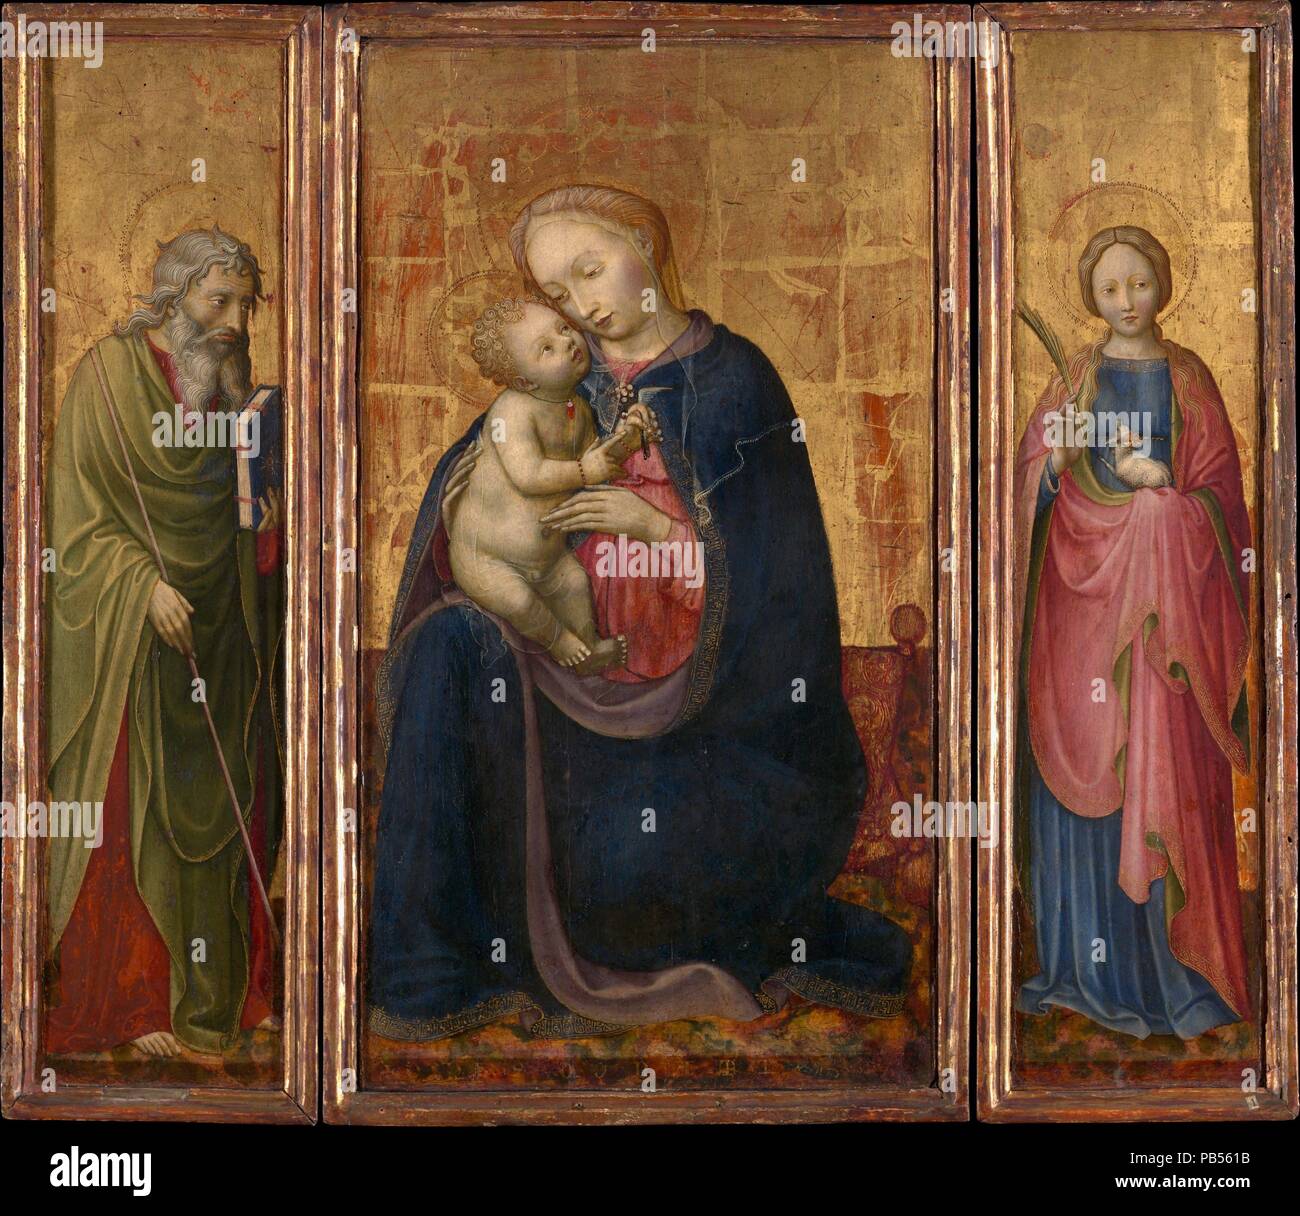 La Madone et l'enfant avec les Saints Philippe et Agnès. Artiste : Donato de' Bardi (Italien, Lombard, actif en 1426-mort 1450/51). Dimensions : panneau central, dans l'ensemble 23 1/2 x 13 1/8 in. (59,7 x 33,3 cm), surface peinte 23 1/8 x 12 3/4 in. (58,7 x 32,4 cm) ; chaque aile, dans l'ensemble 23 5/8 x 6 in. (60 x 15,2 cm), surface peinte 23 1/4 x 5 1/2 in. (59,1 x 14 cm). Date : ca. 1425-30. Dans facture exquise et délicate dans l'expression, c'est la première œuvre connue par Donato de' Bardi. Il est possible qu'il a été peint à Pavie (au sud de Milan), où Donato aurait connu le grand miniaturiste Michelino da B Banque D'Images